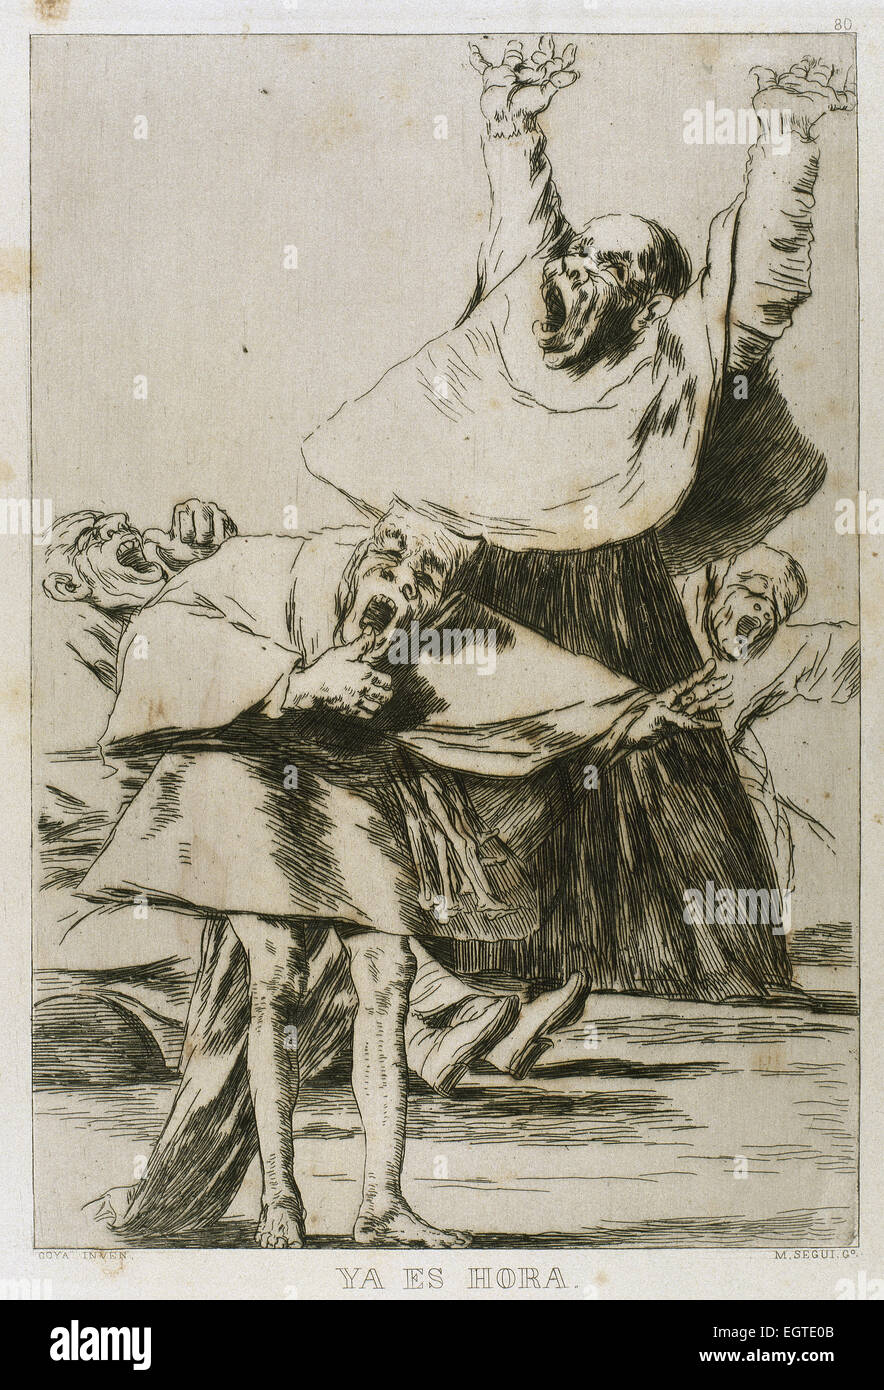 Francisco Goya (1746-1828). Capricen. Plaque 80. 18. Jahrhundert. Es ist an der Zeit. Prado-Museum. Madrid. Stockfoto